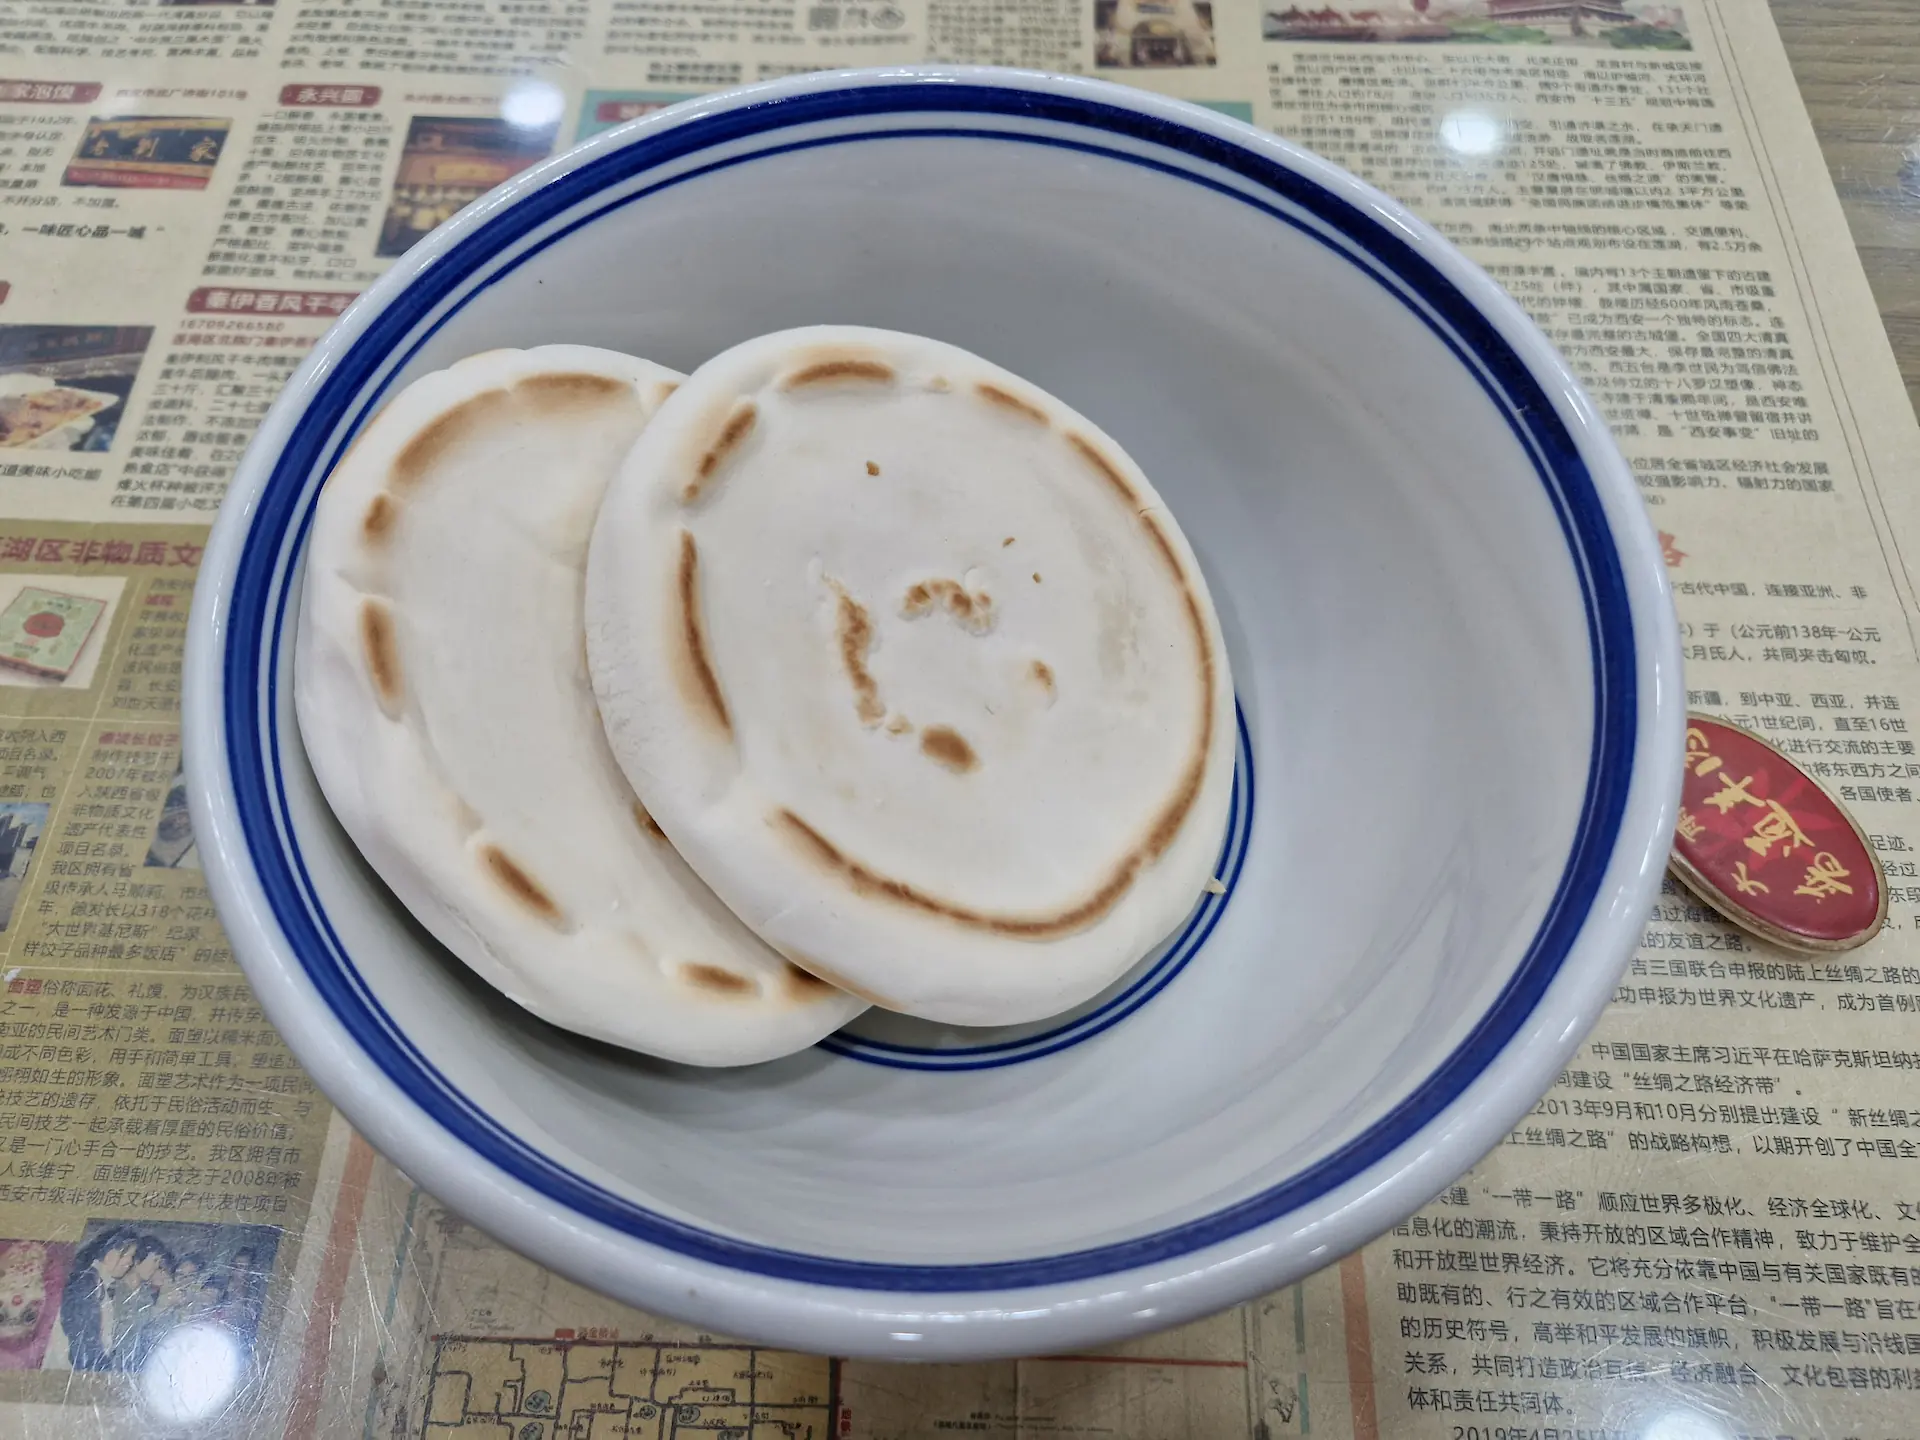 Un bol avec deux petits pains plats circulaires mó posés dedans